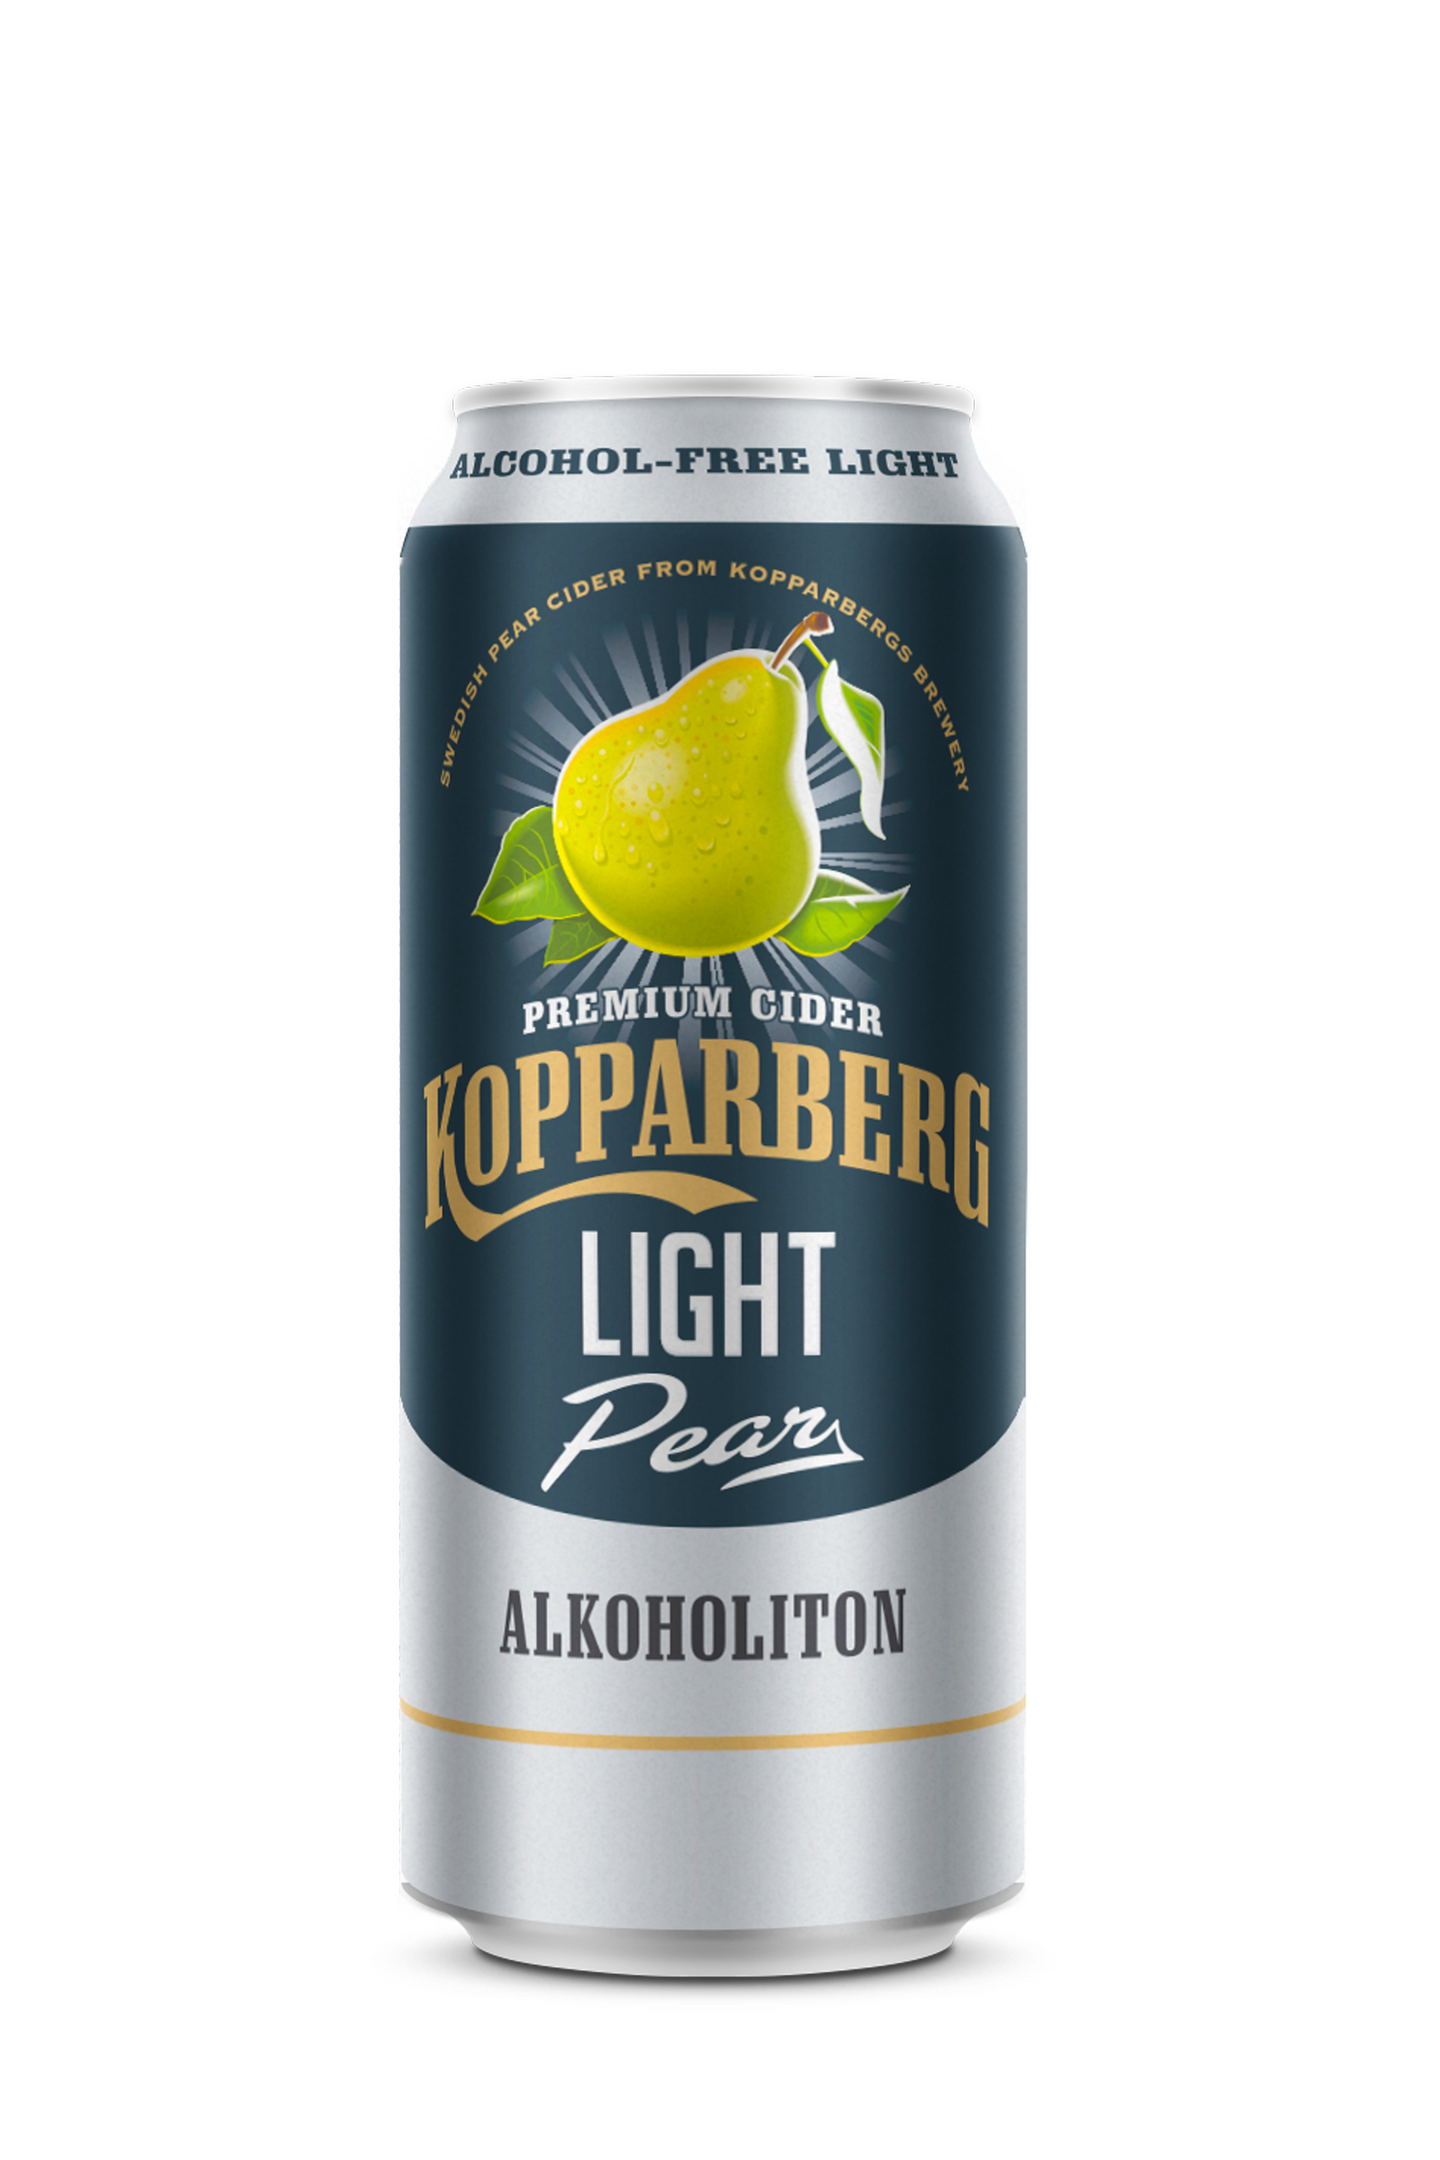 Kopparberg päärynä light 0,5l 0% DOLLY